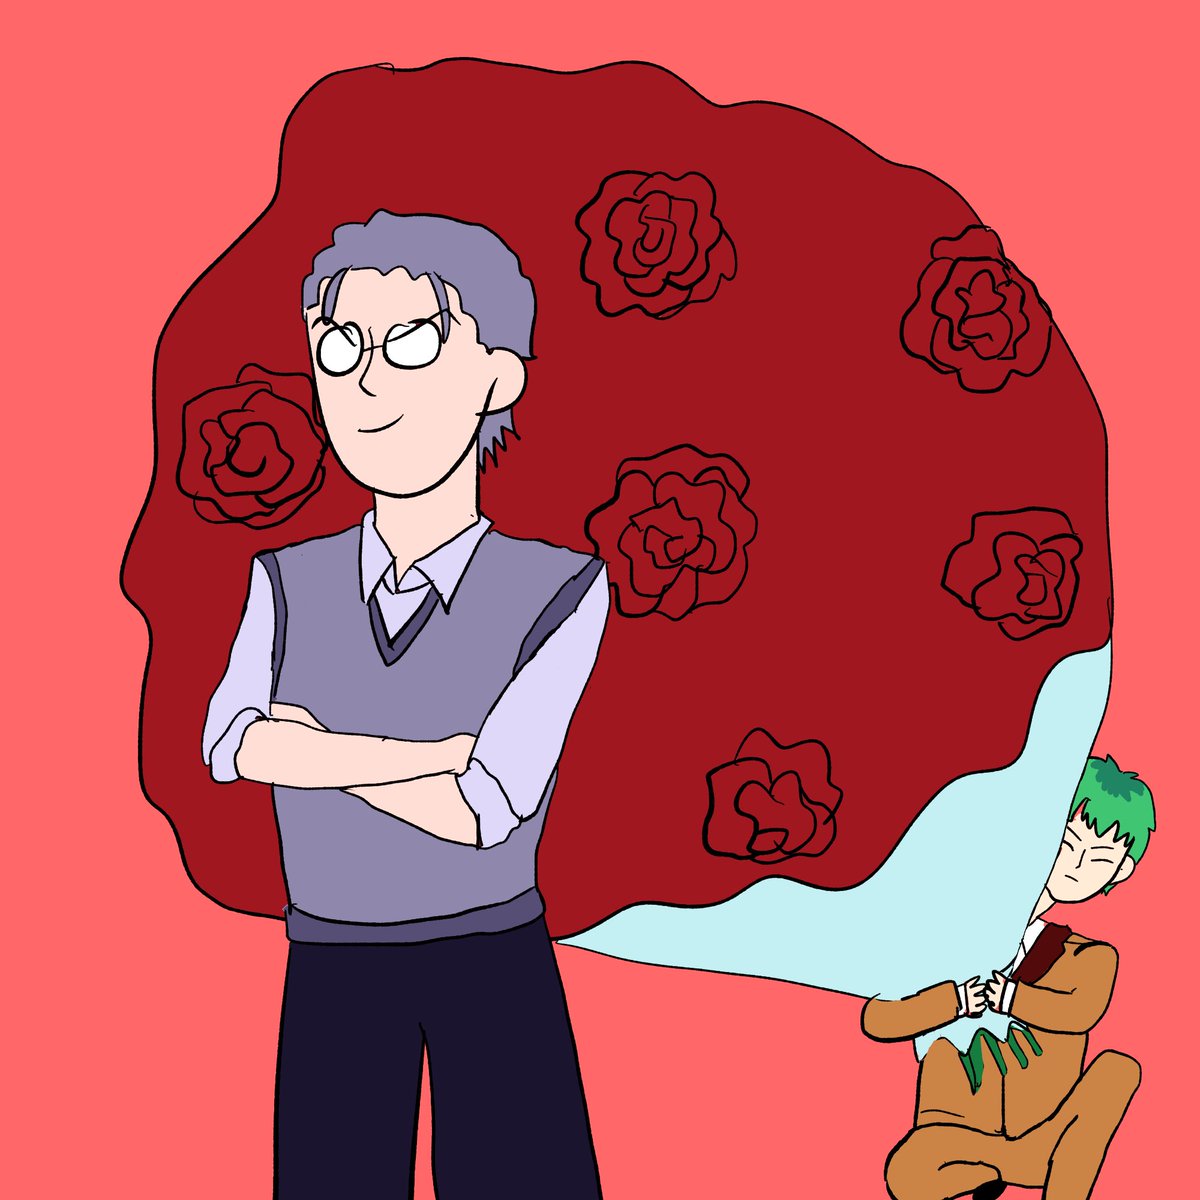 「薔薇が似合う男 」|運ティルのイラスト